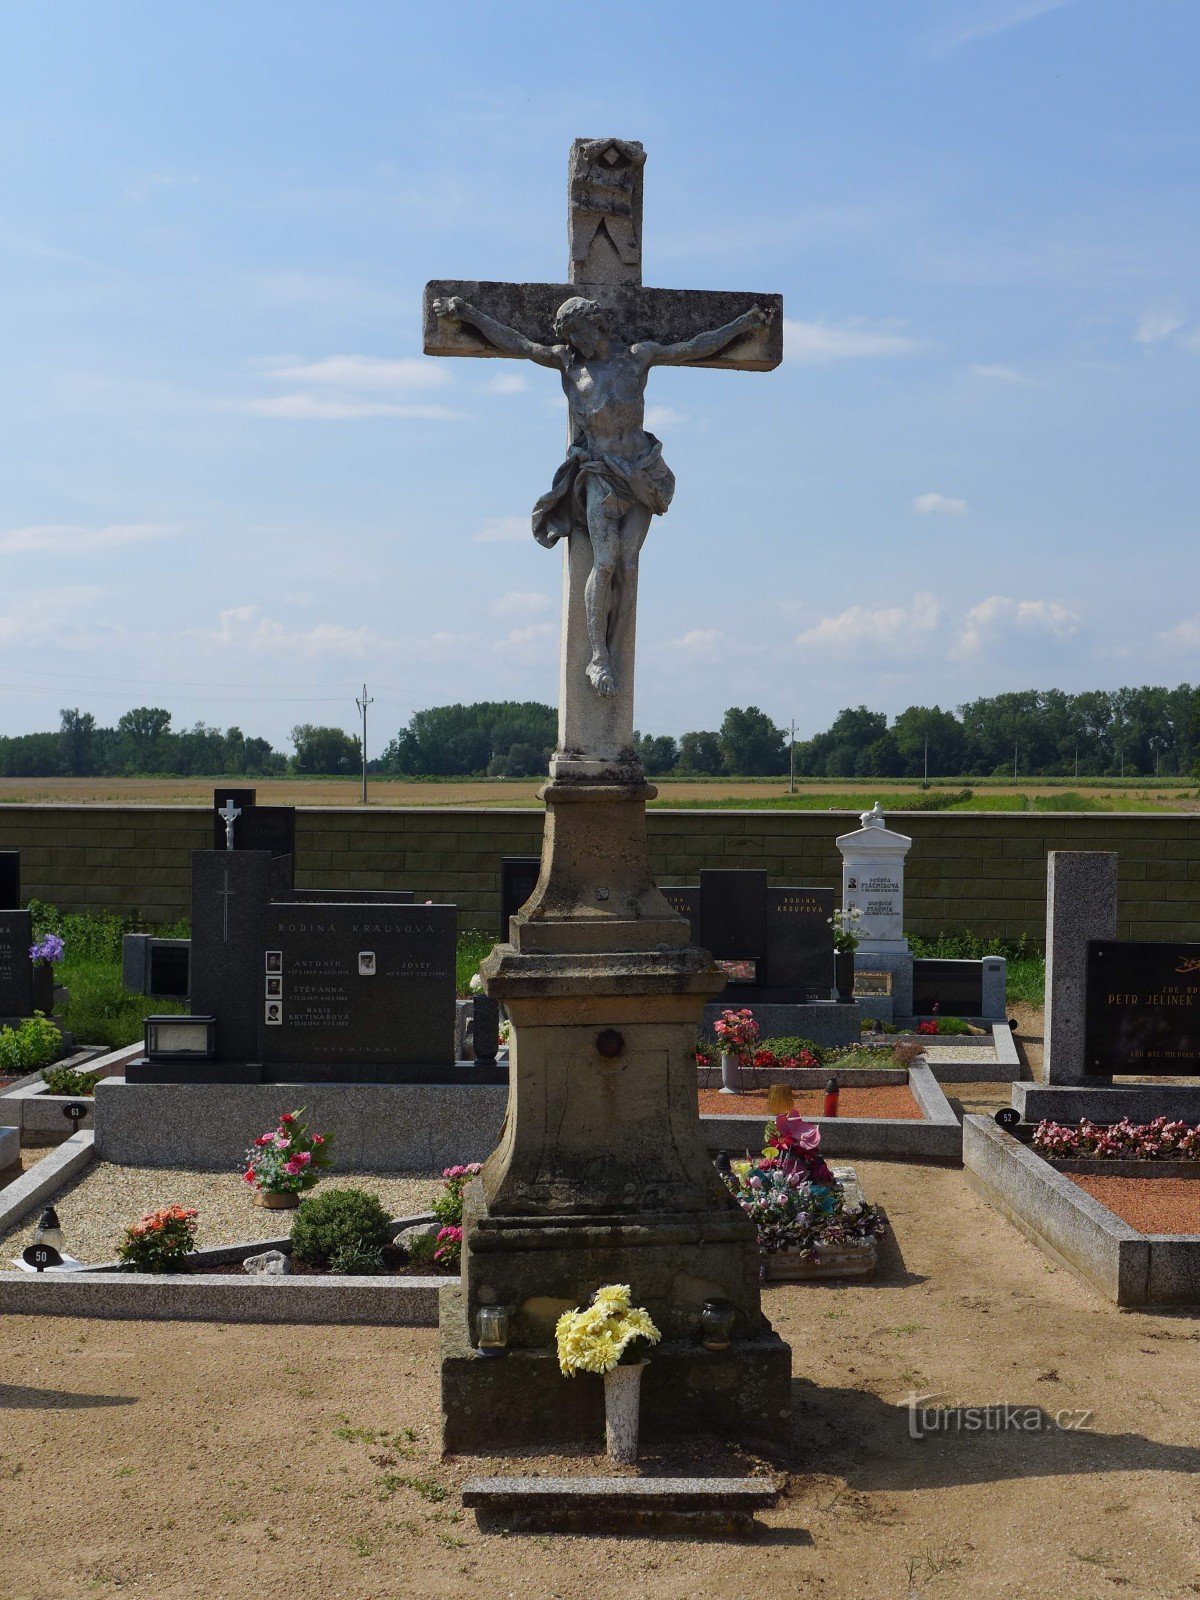 Nemčičky - centralt kors på kirkegården